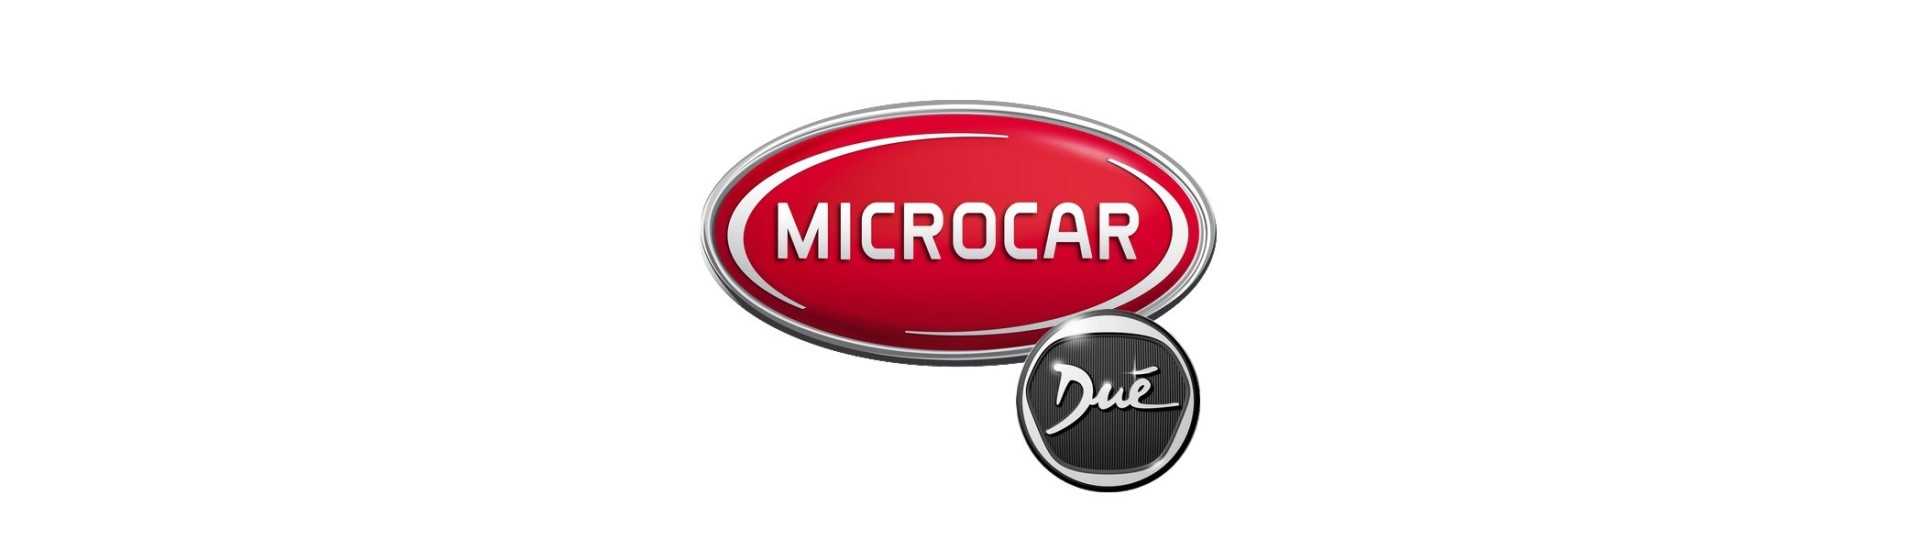 Relaţie / modul electronic pentru mașină fără permis Microcar Dué